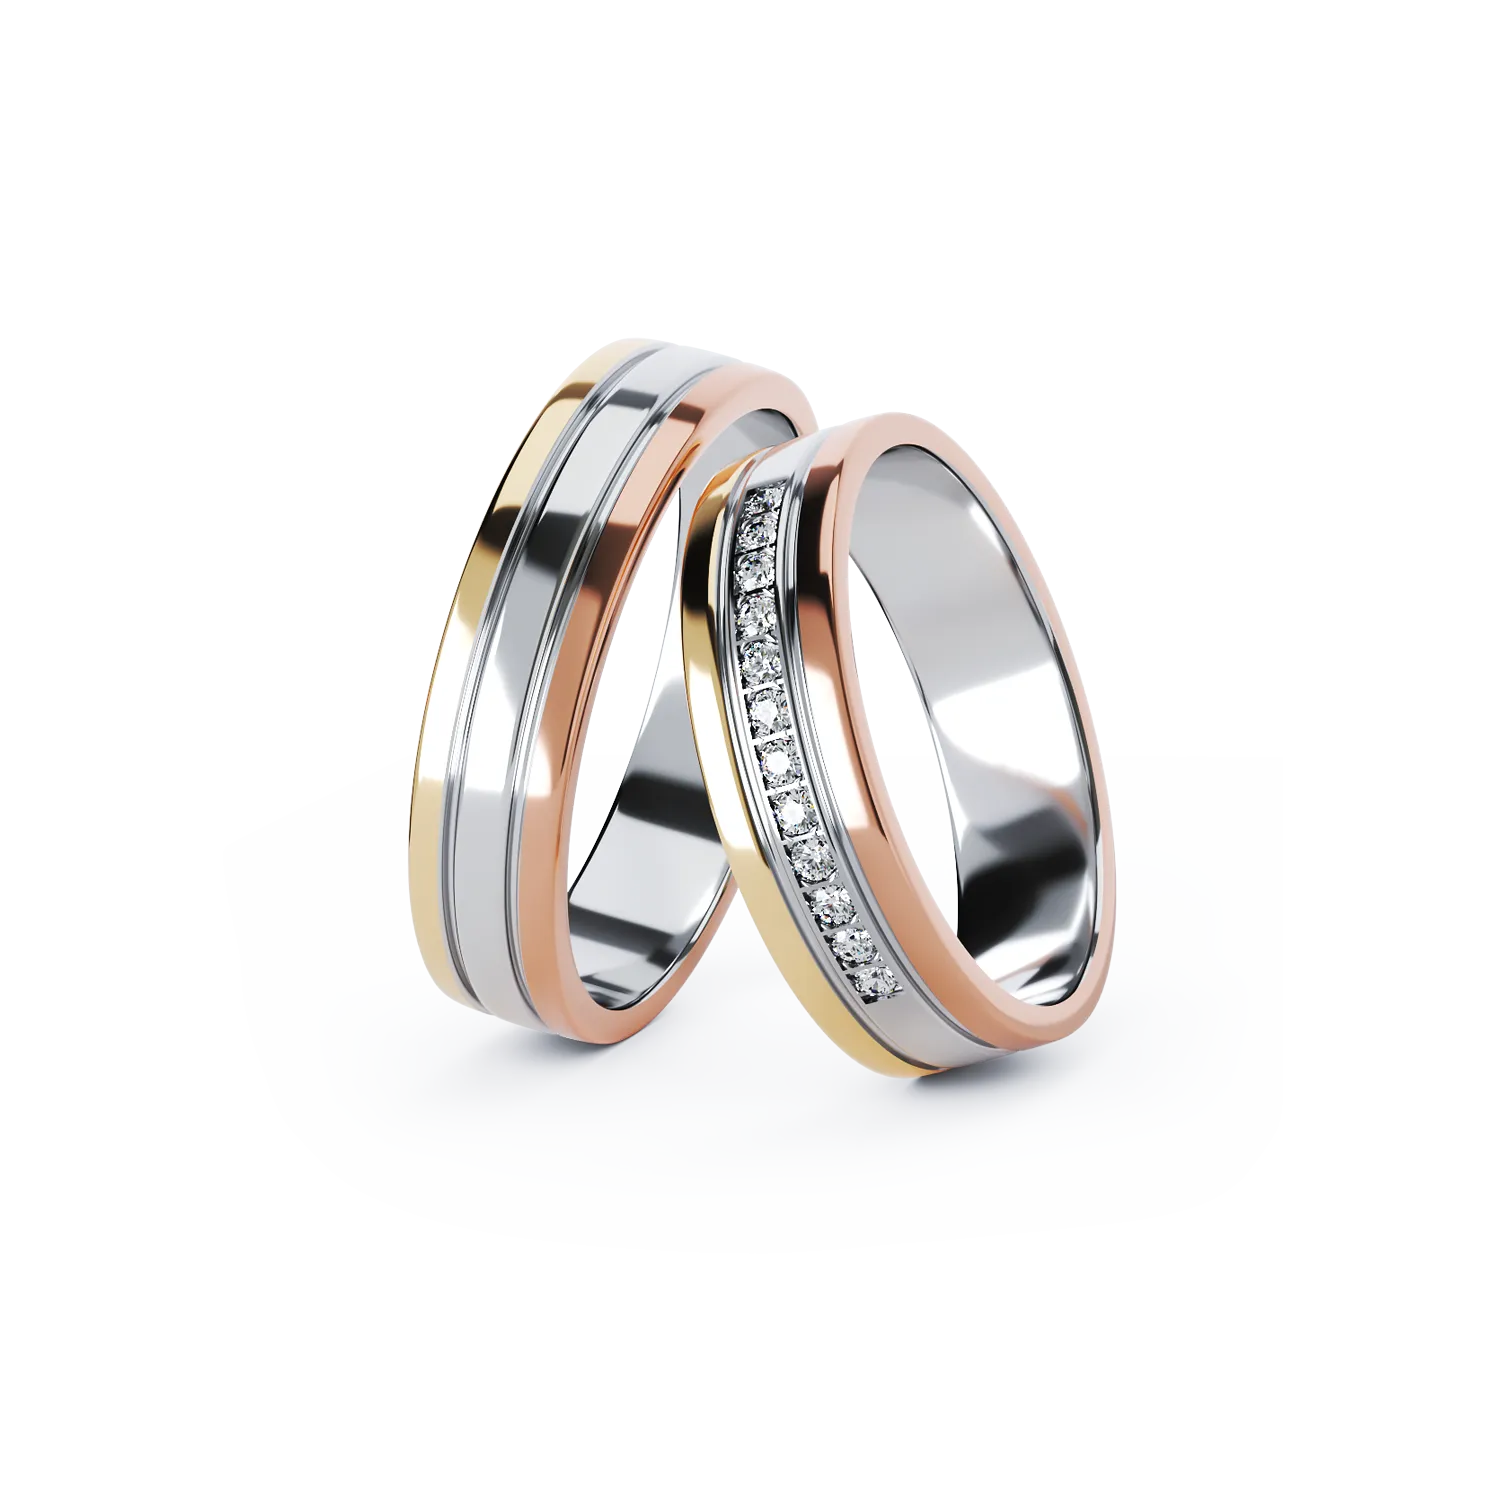 TEI-CHERIE gold wedding rings